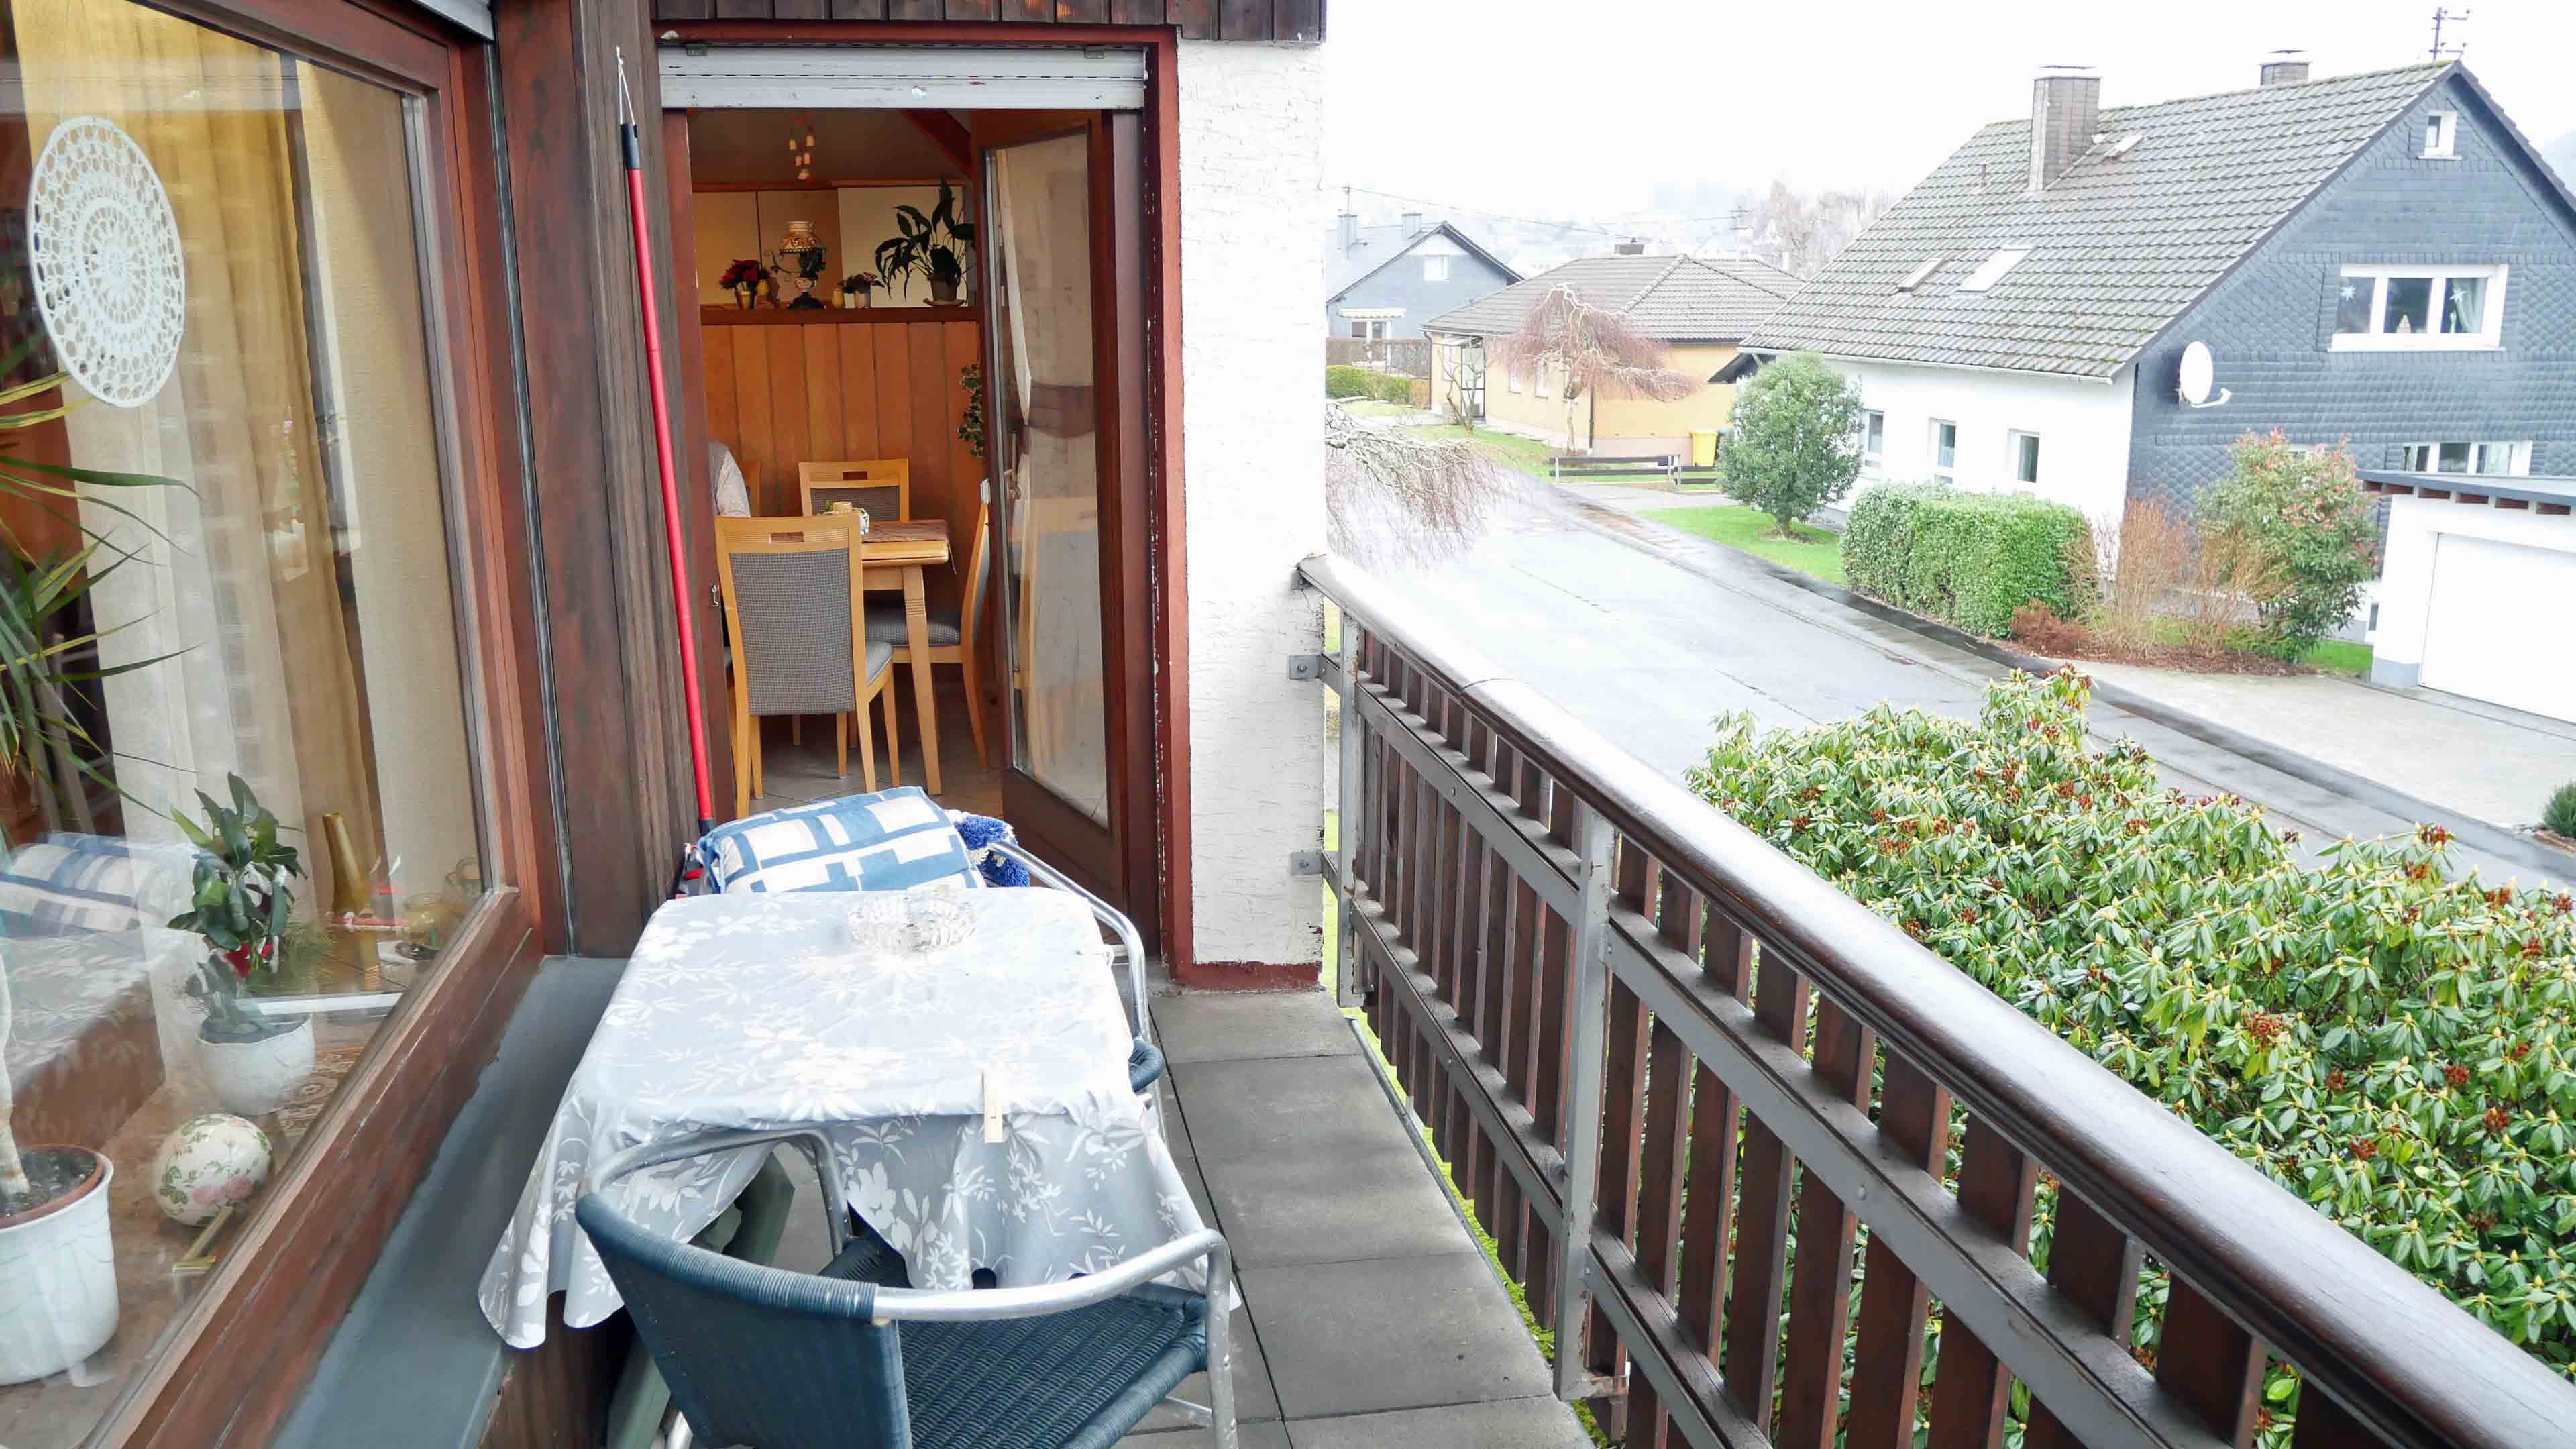 Freudenberg-Büschergrund: EFH mit Terrasse, Garten und Garage, ...auch auf dem Balkon hinter dem Fenster